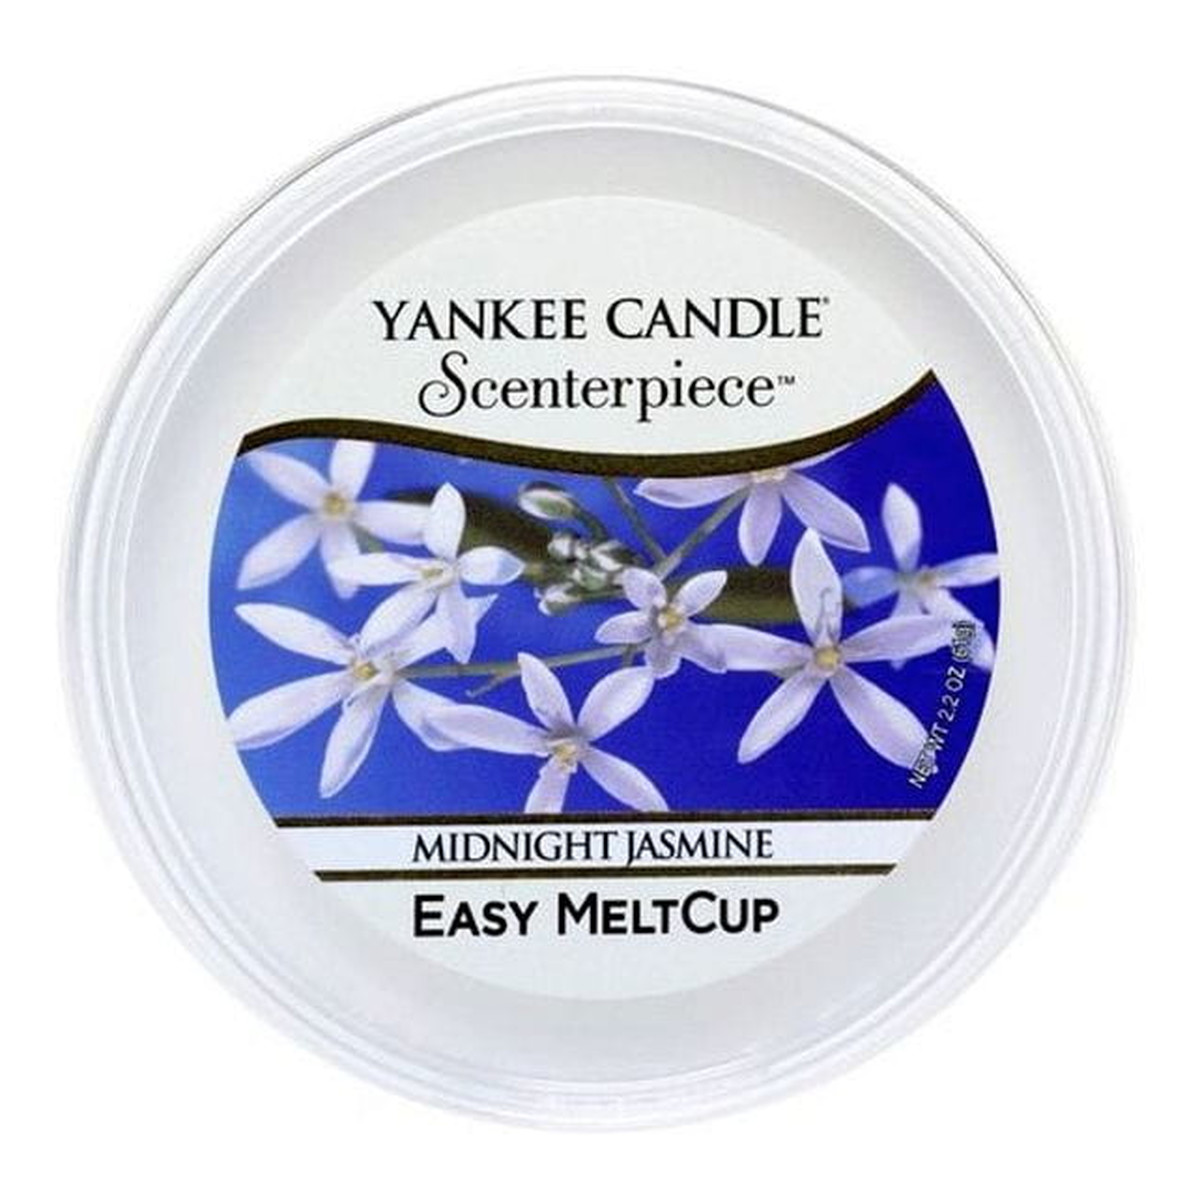 Yankee Candle Scenterpiece Easy Melt Cup wosk do elektrycznego kominka Midnight Jasmine 61g